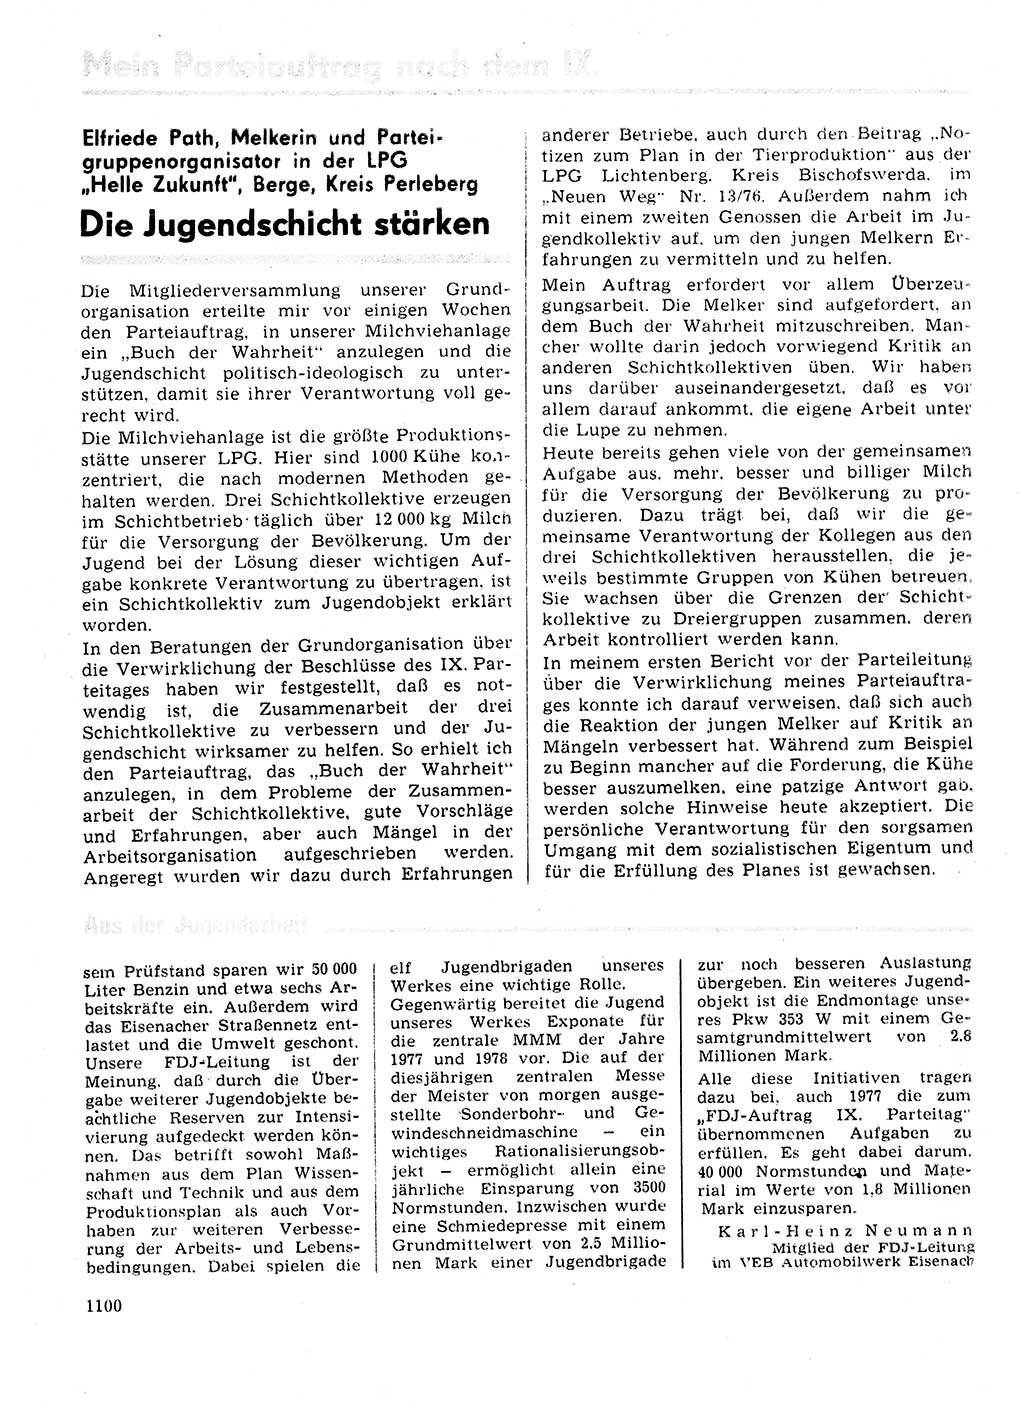 Neuer Weg (NW), Organ des Zentralkomitees (ZK) der SED (Sozialistische Einheitspartei Deutschlands) für Fragen des Parteilebens, 31. Jahrgang [Deutsche Demokratische Republik (DDR)] 1976, Seite 1100 (NW ZK SED DDR 1976, S. 1100)